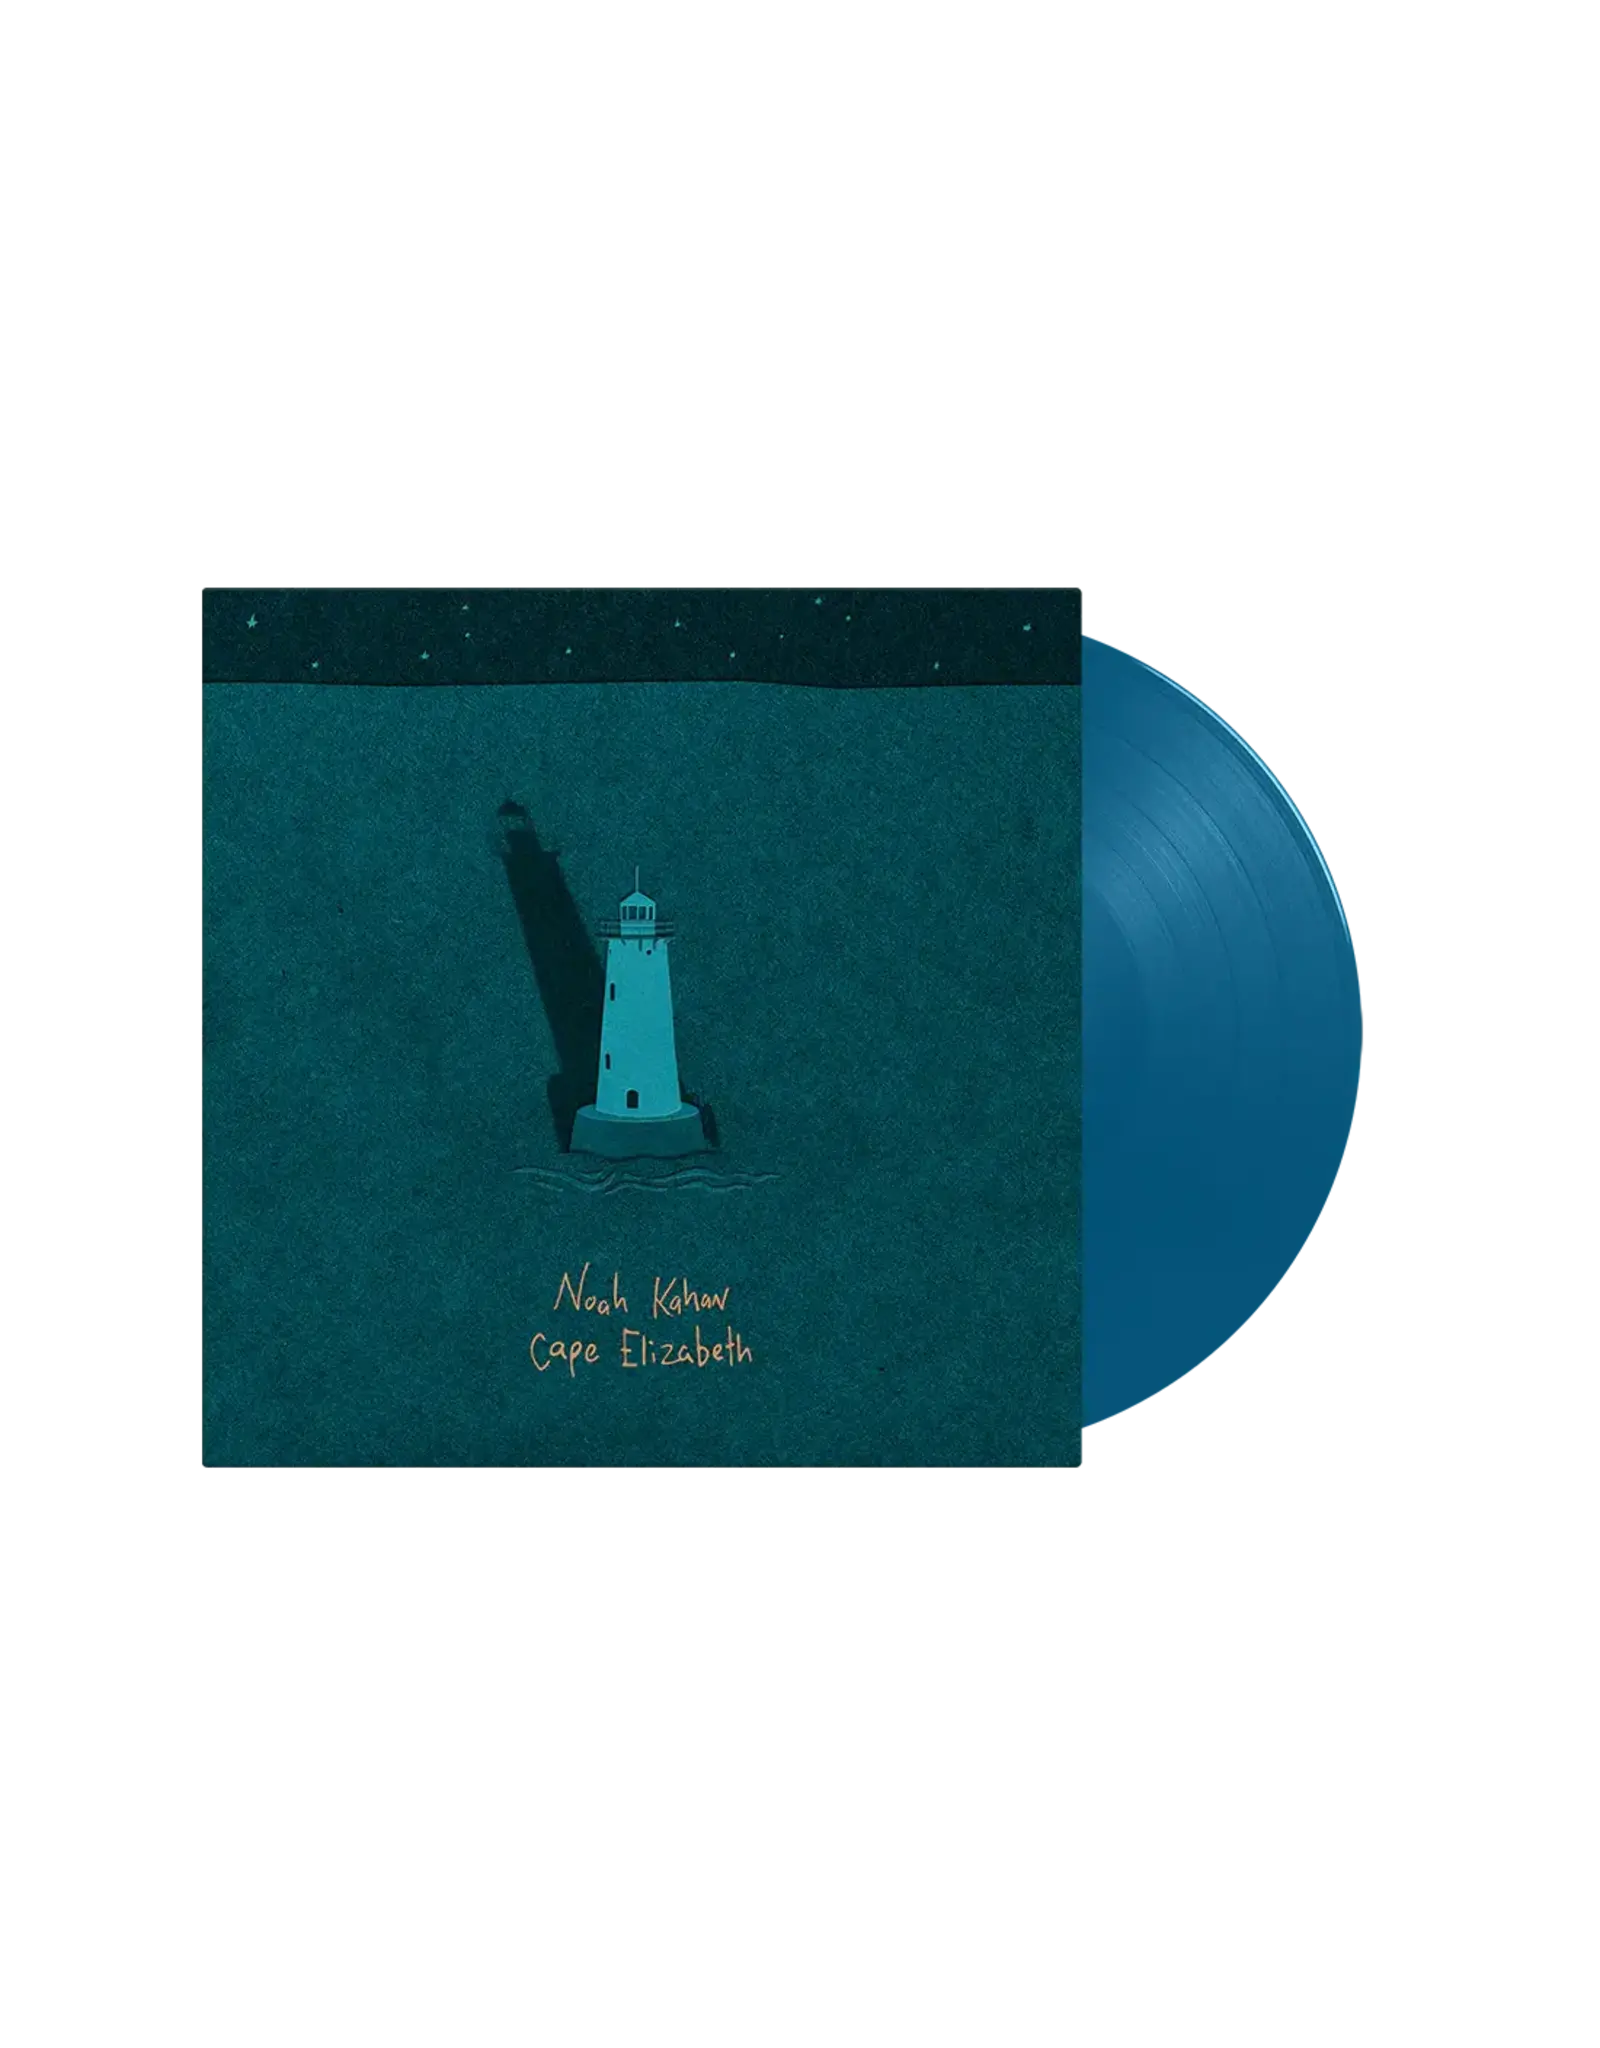 Republic Kahan, Noah: Cape Elizabeth EP (aqua color 12" vinyl/repackaged) LP